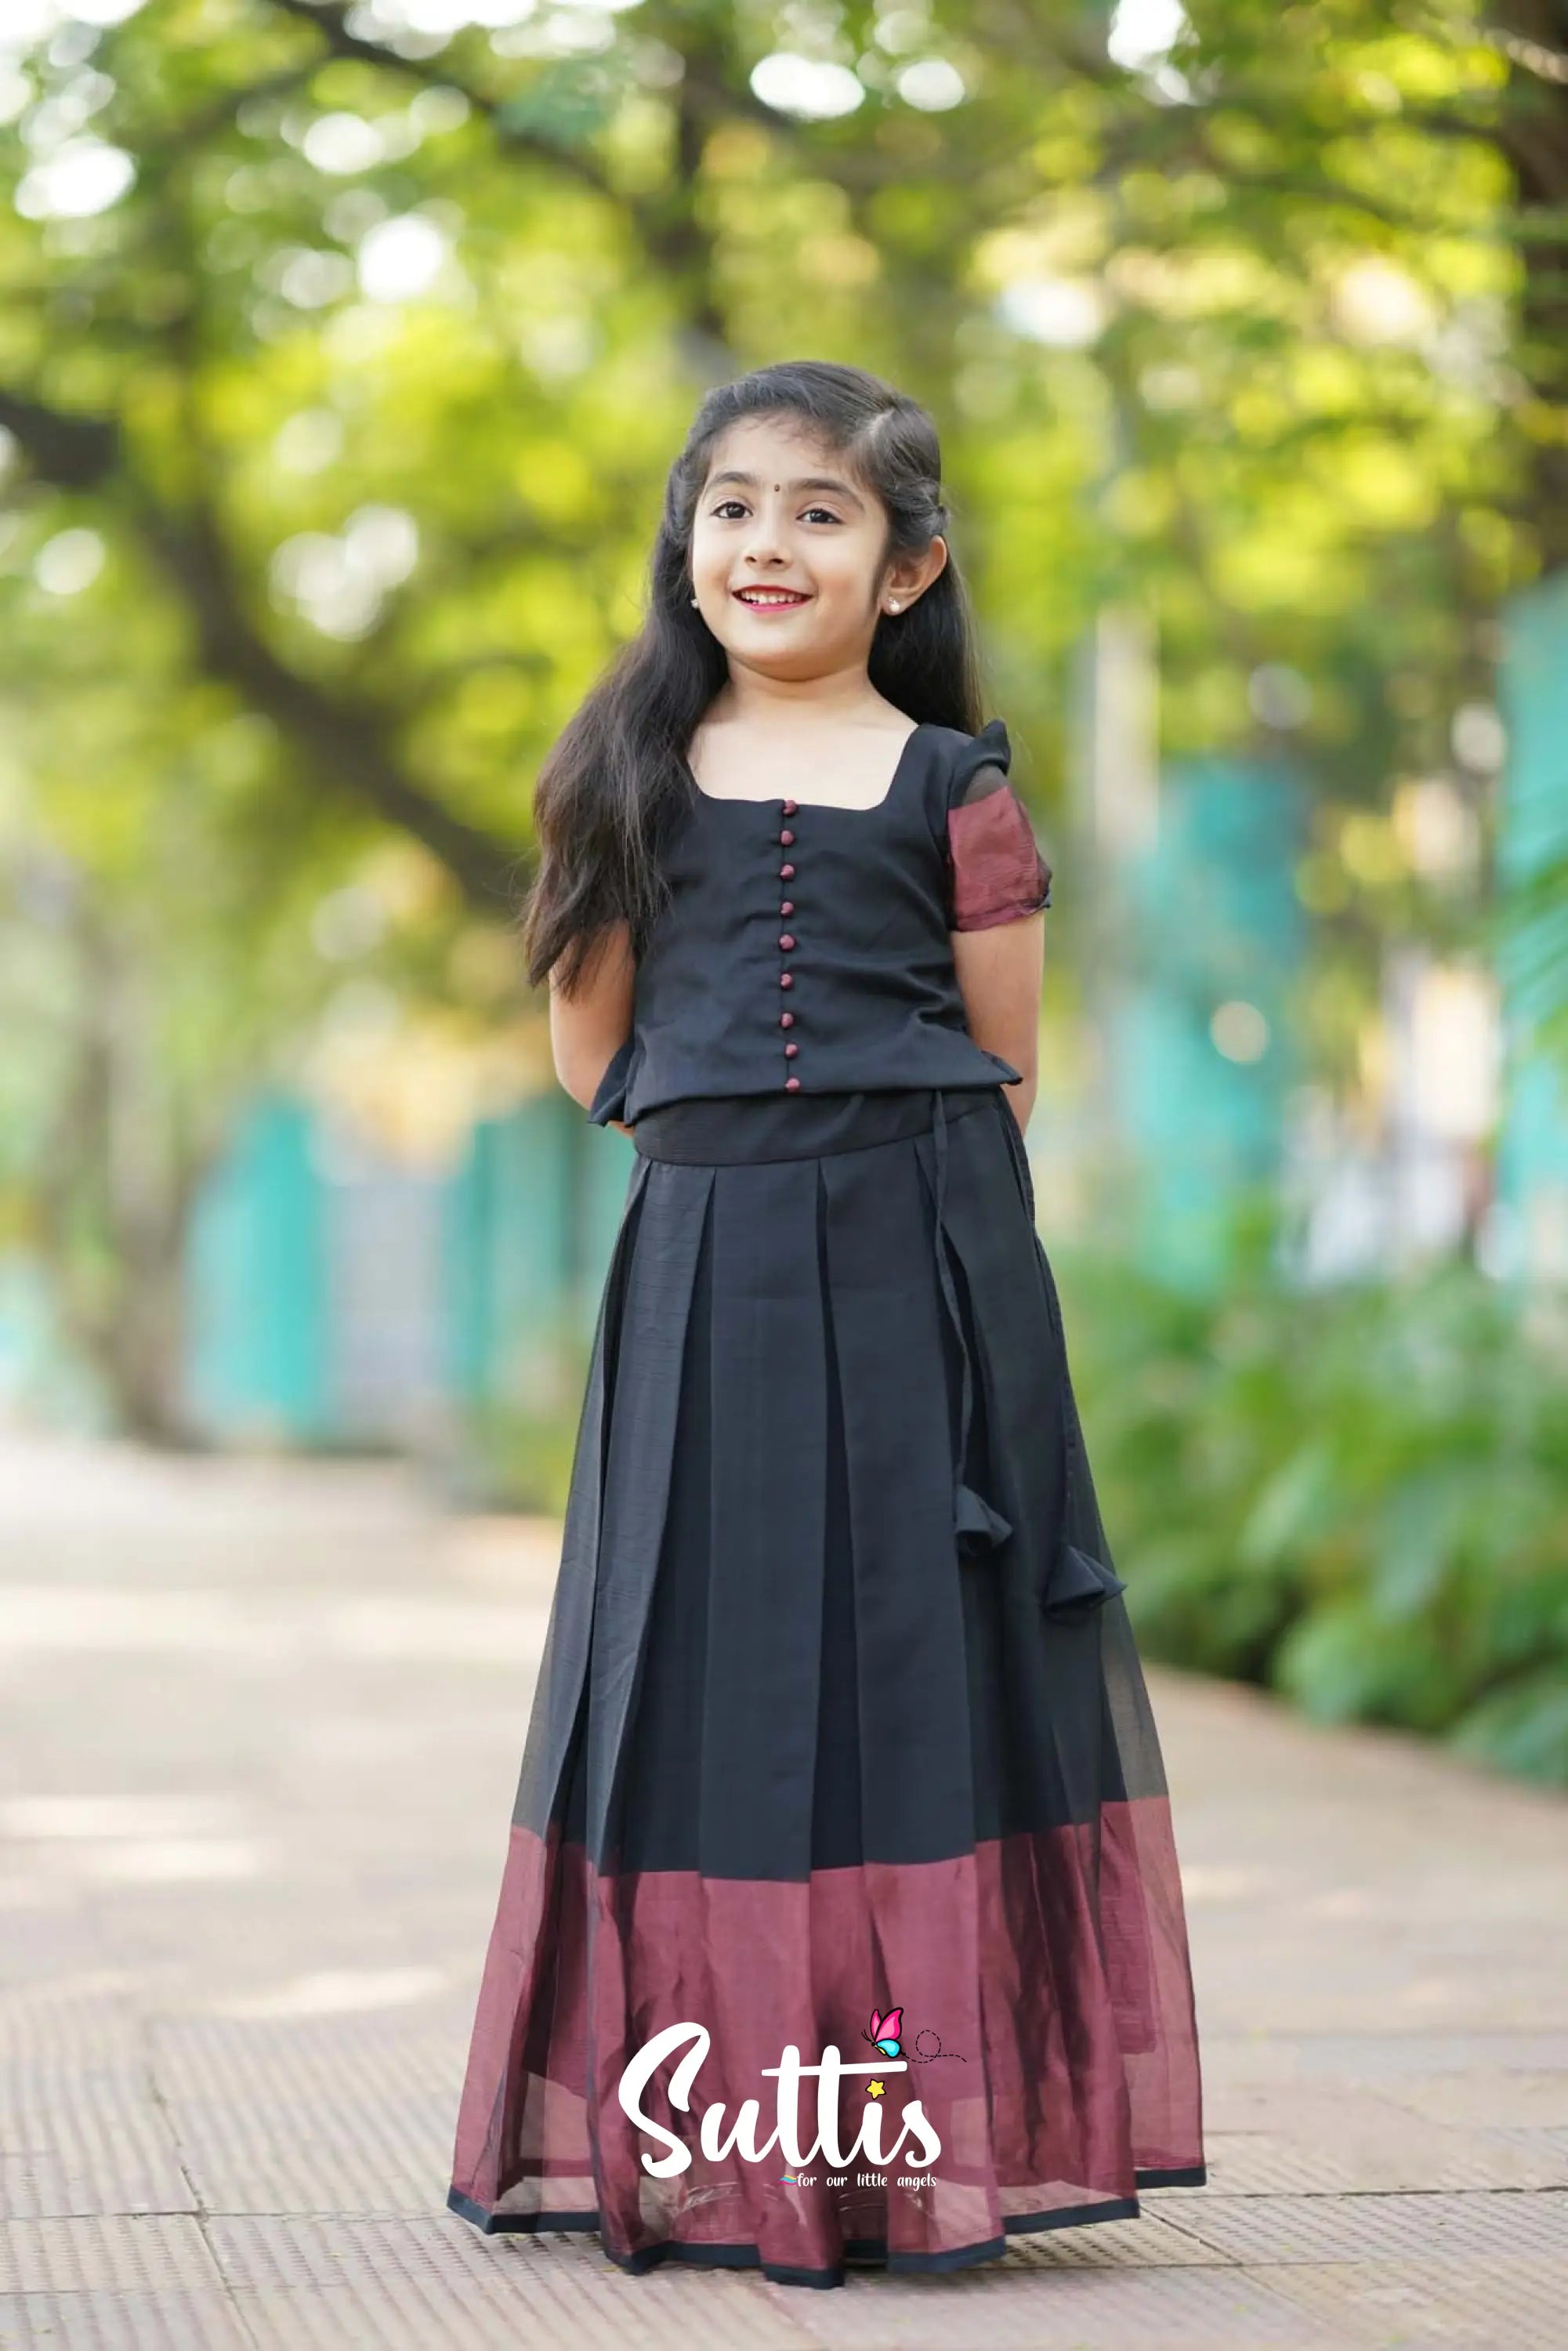 Zara - Black Georgette Crop Top And Skirt Kids-Suttis